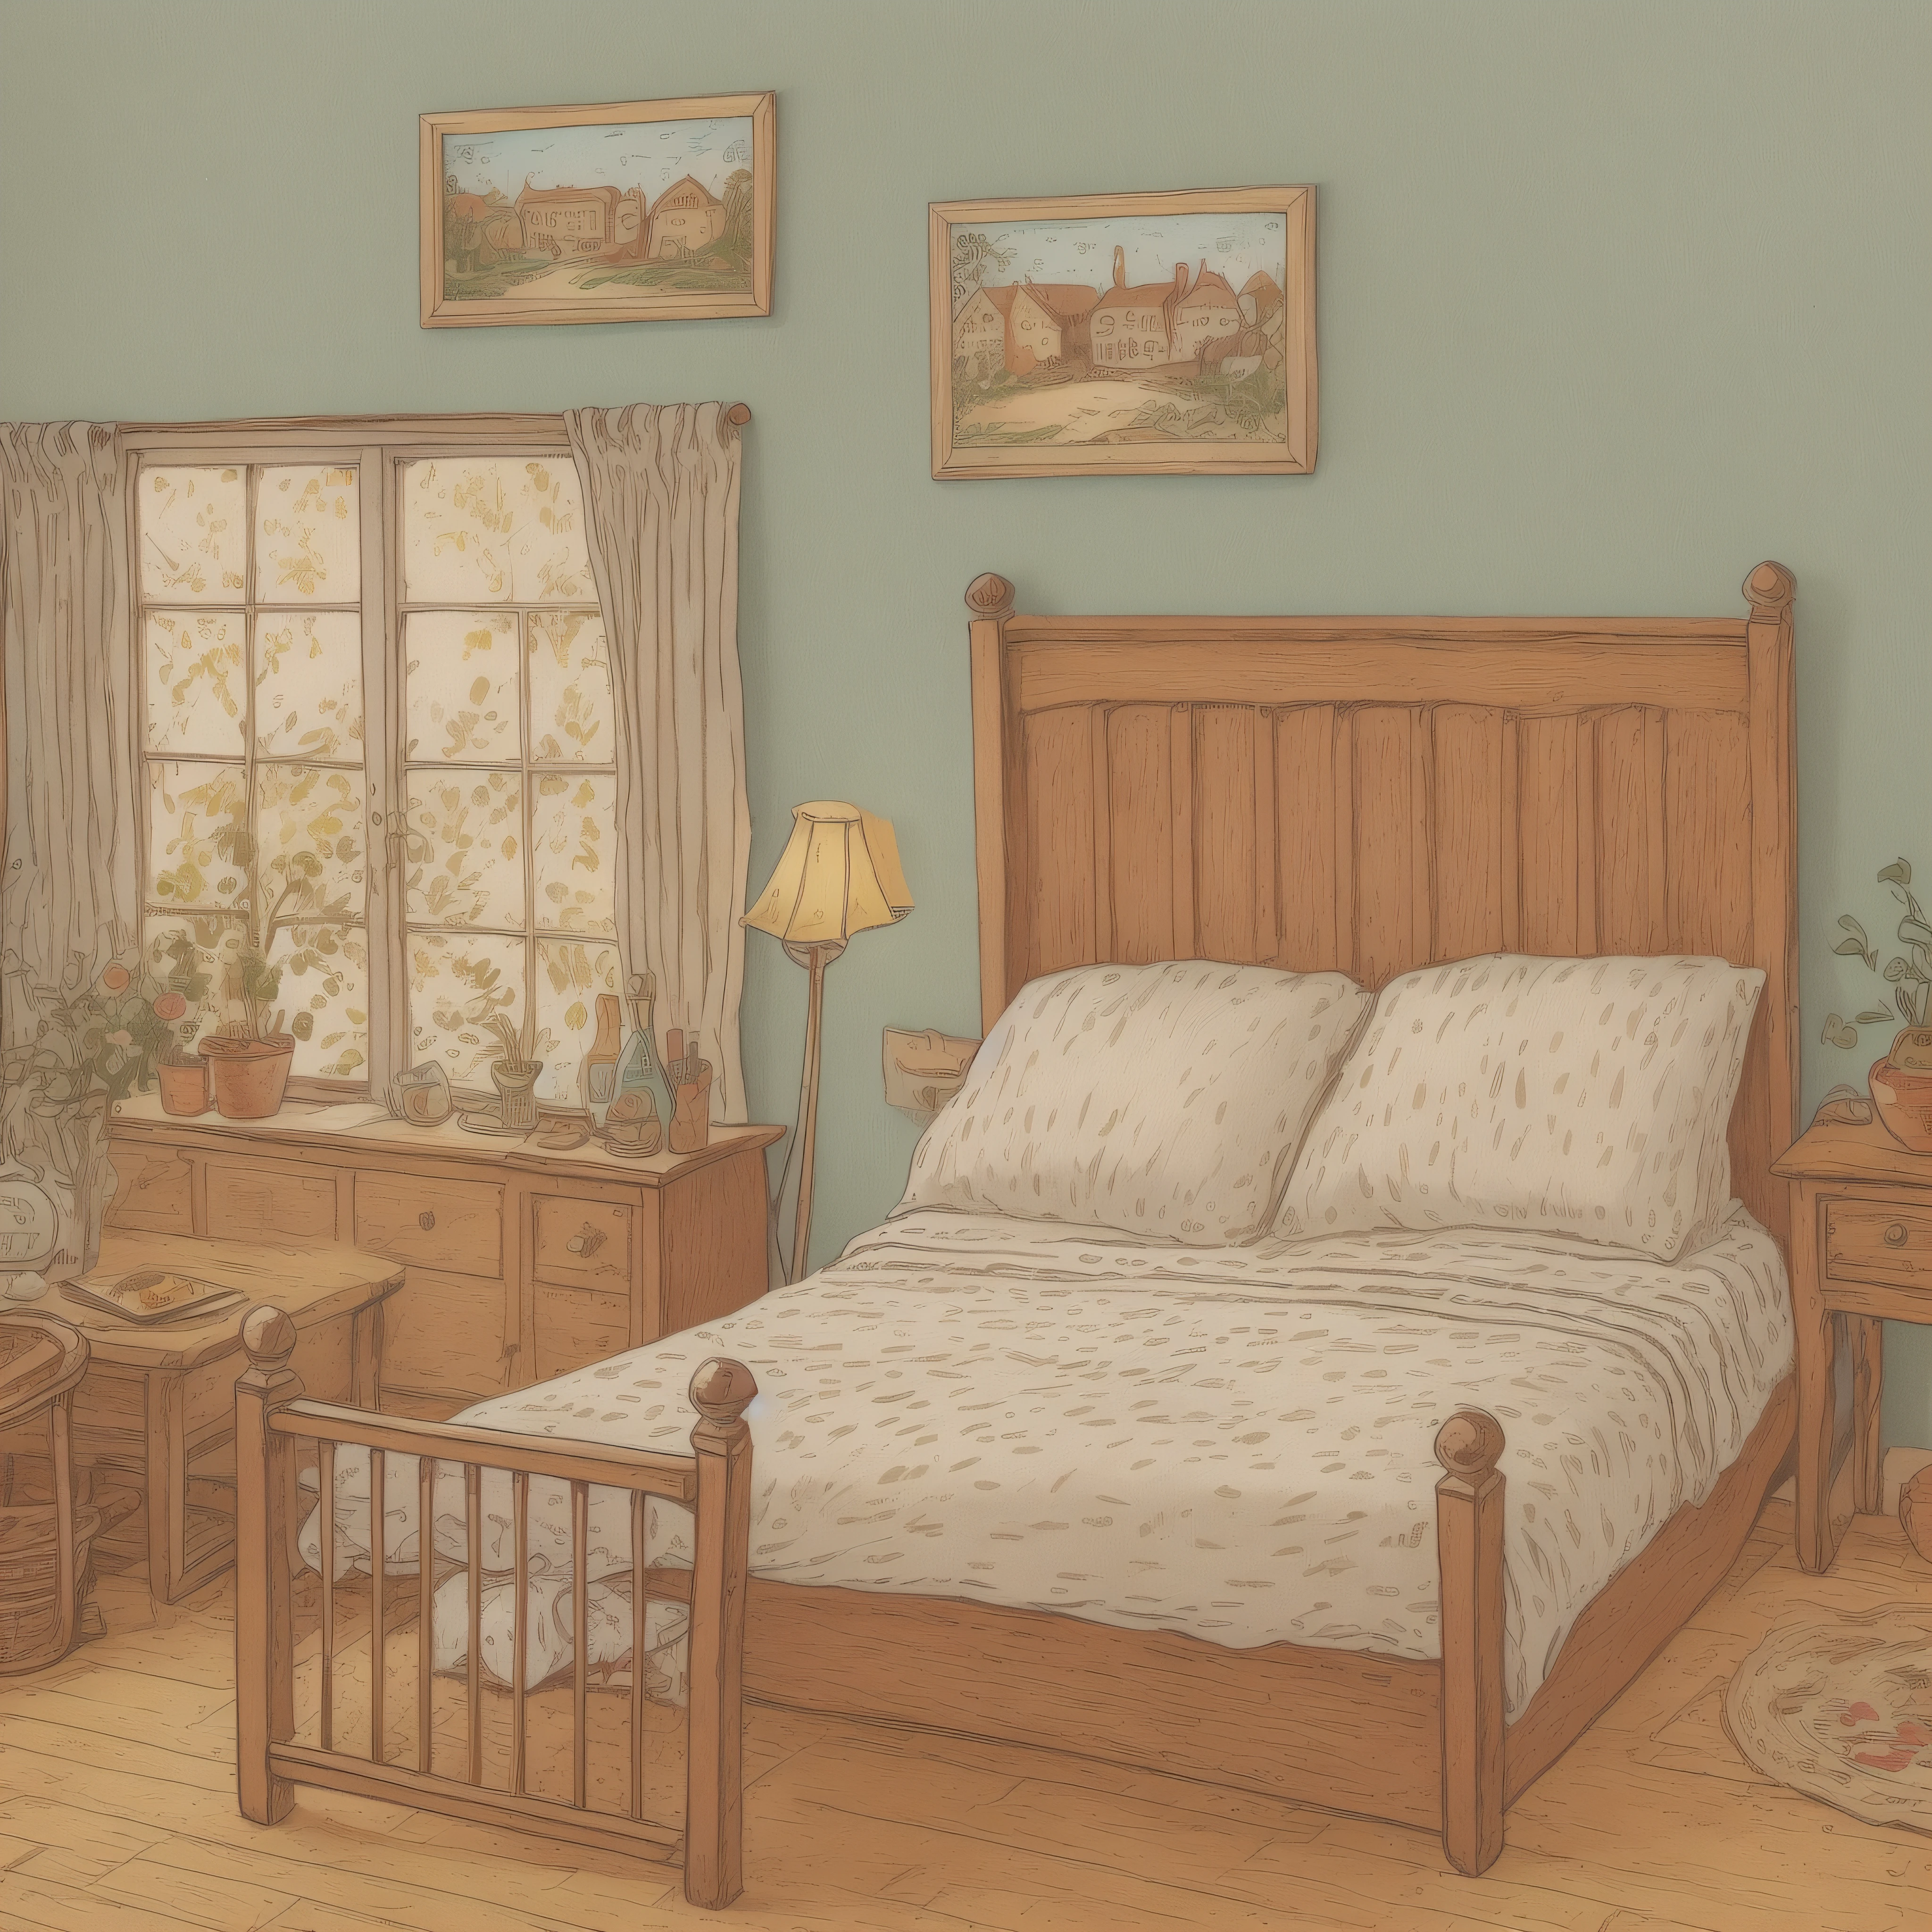 子供向け絵本イラスト, 村の宿屋のベッド2つ, 設定画像, かわいい, カラーイラスト, 構成材料, カラフルな色, 18世紀フランス,